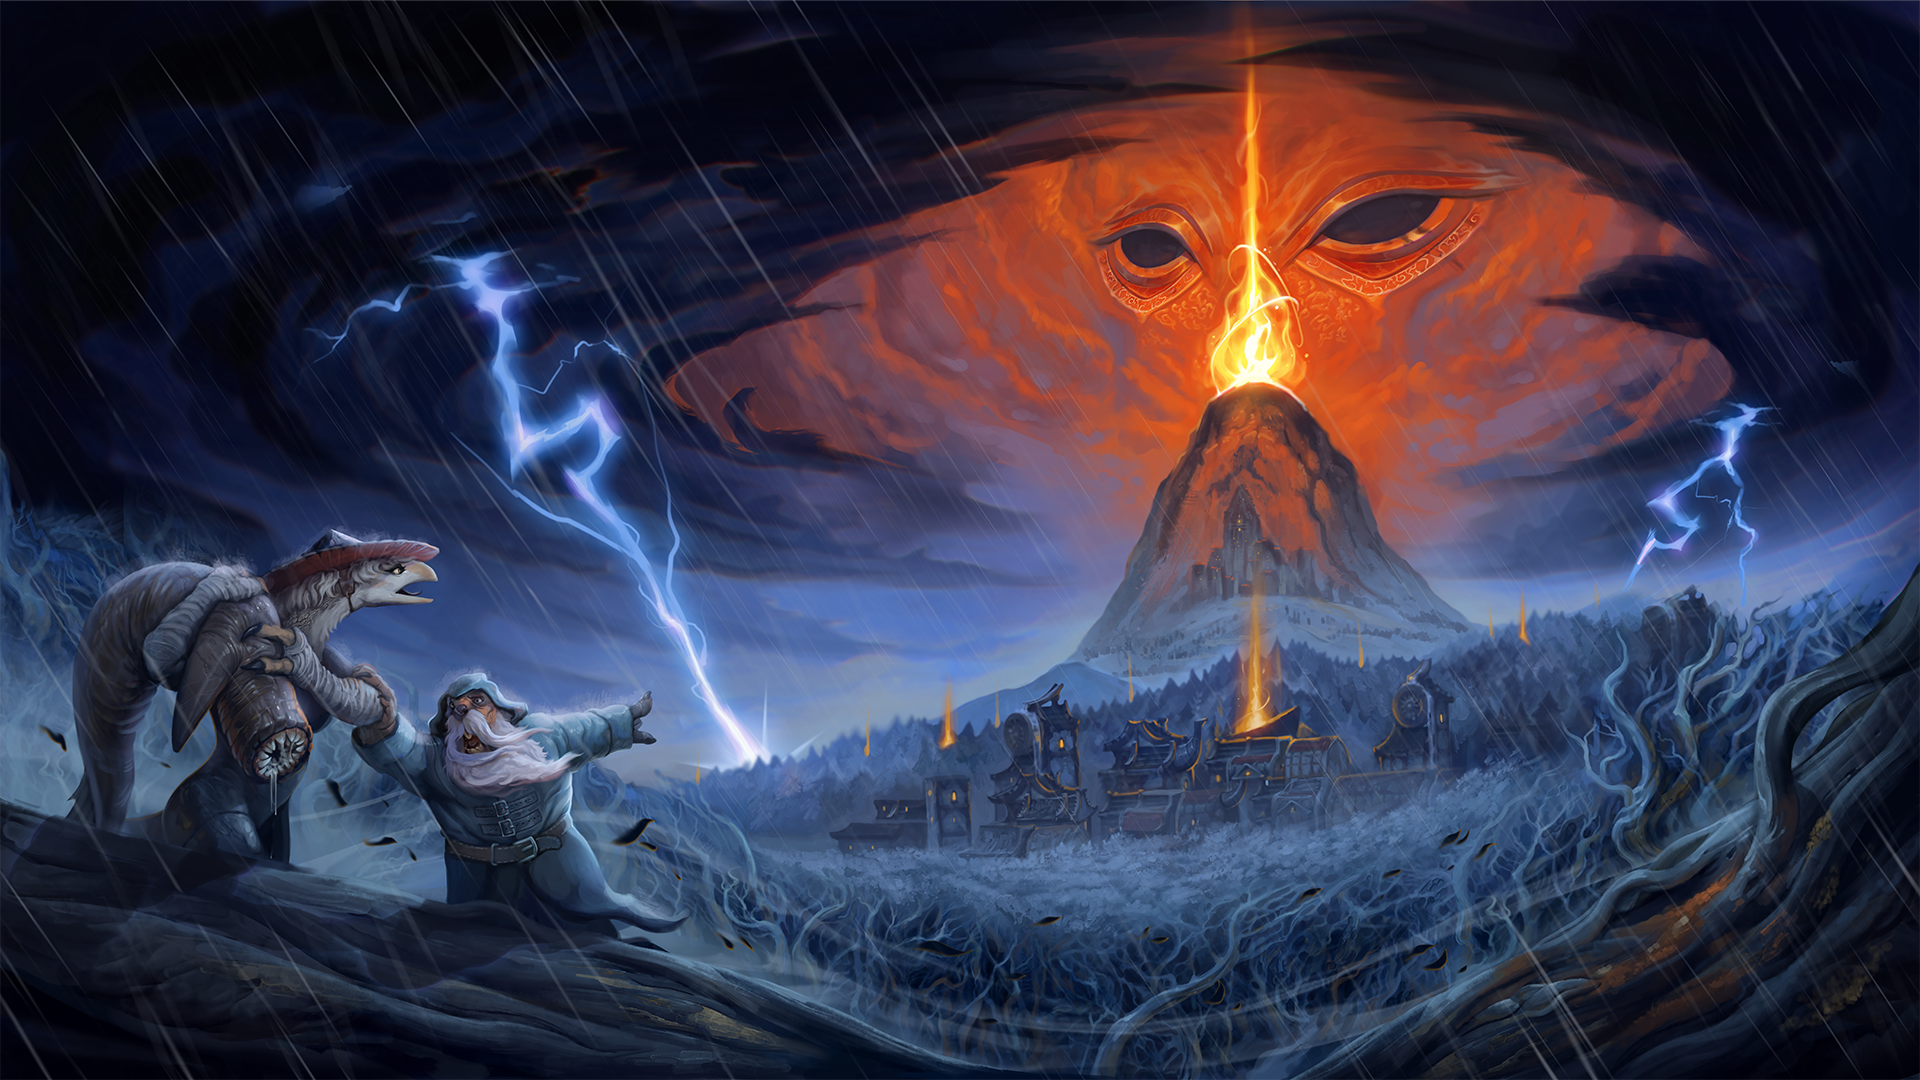 Ключевая арт-работа Against the Storm, на которой показаны два поселенца в переднем плане, убегающие от огромного шторма и зловещего вулкана вдали.